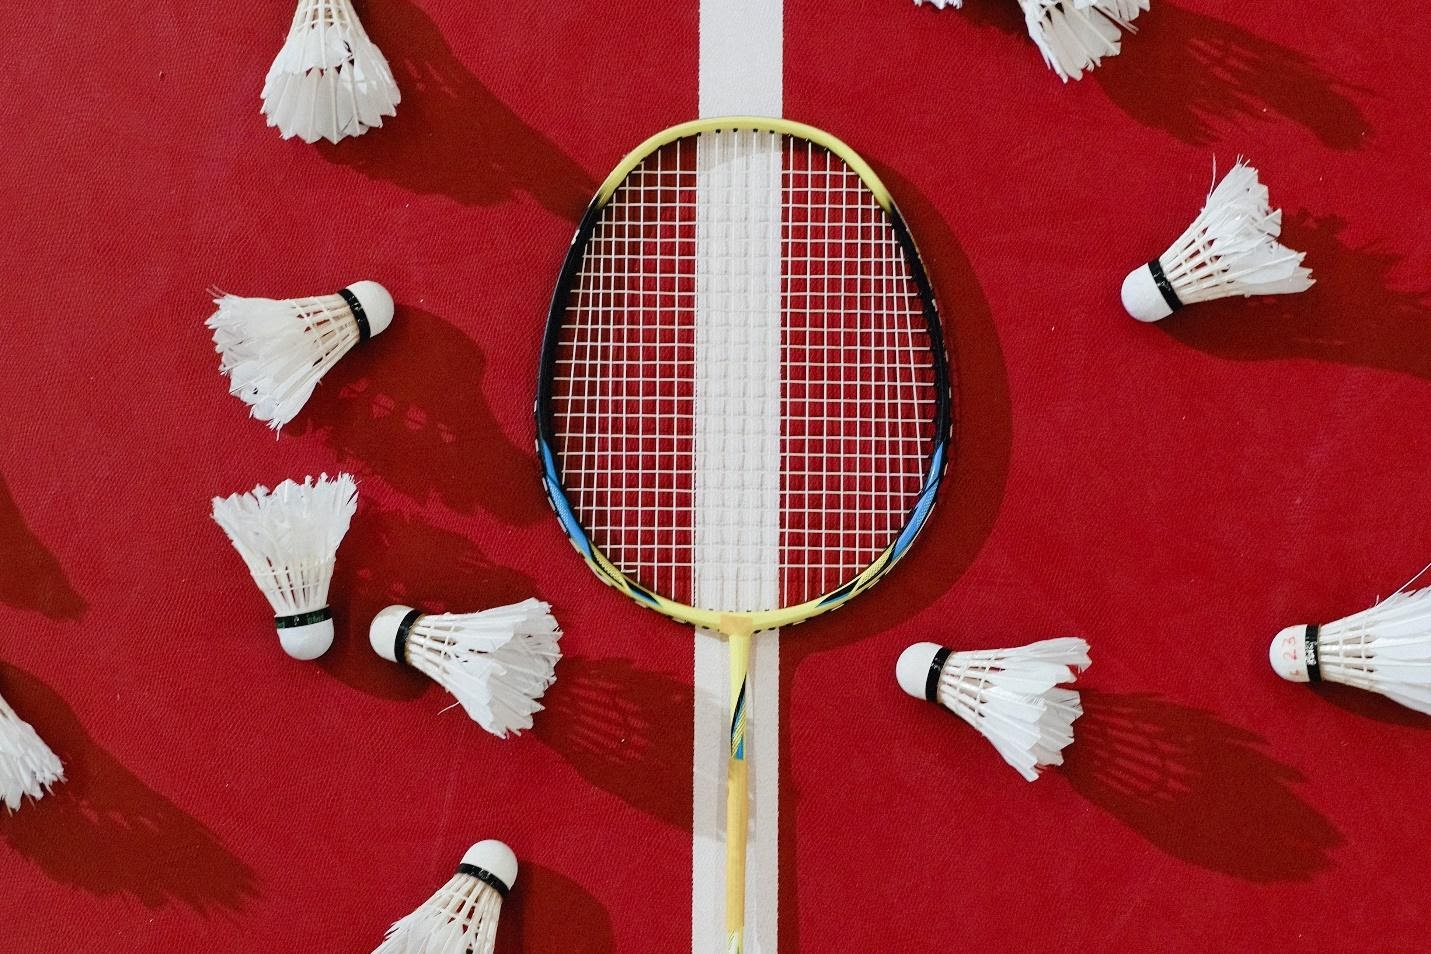 Best Badminton Racket Brands at Badminton Warehouse!